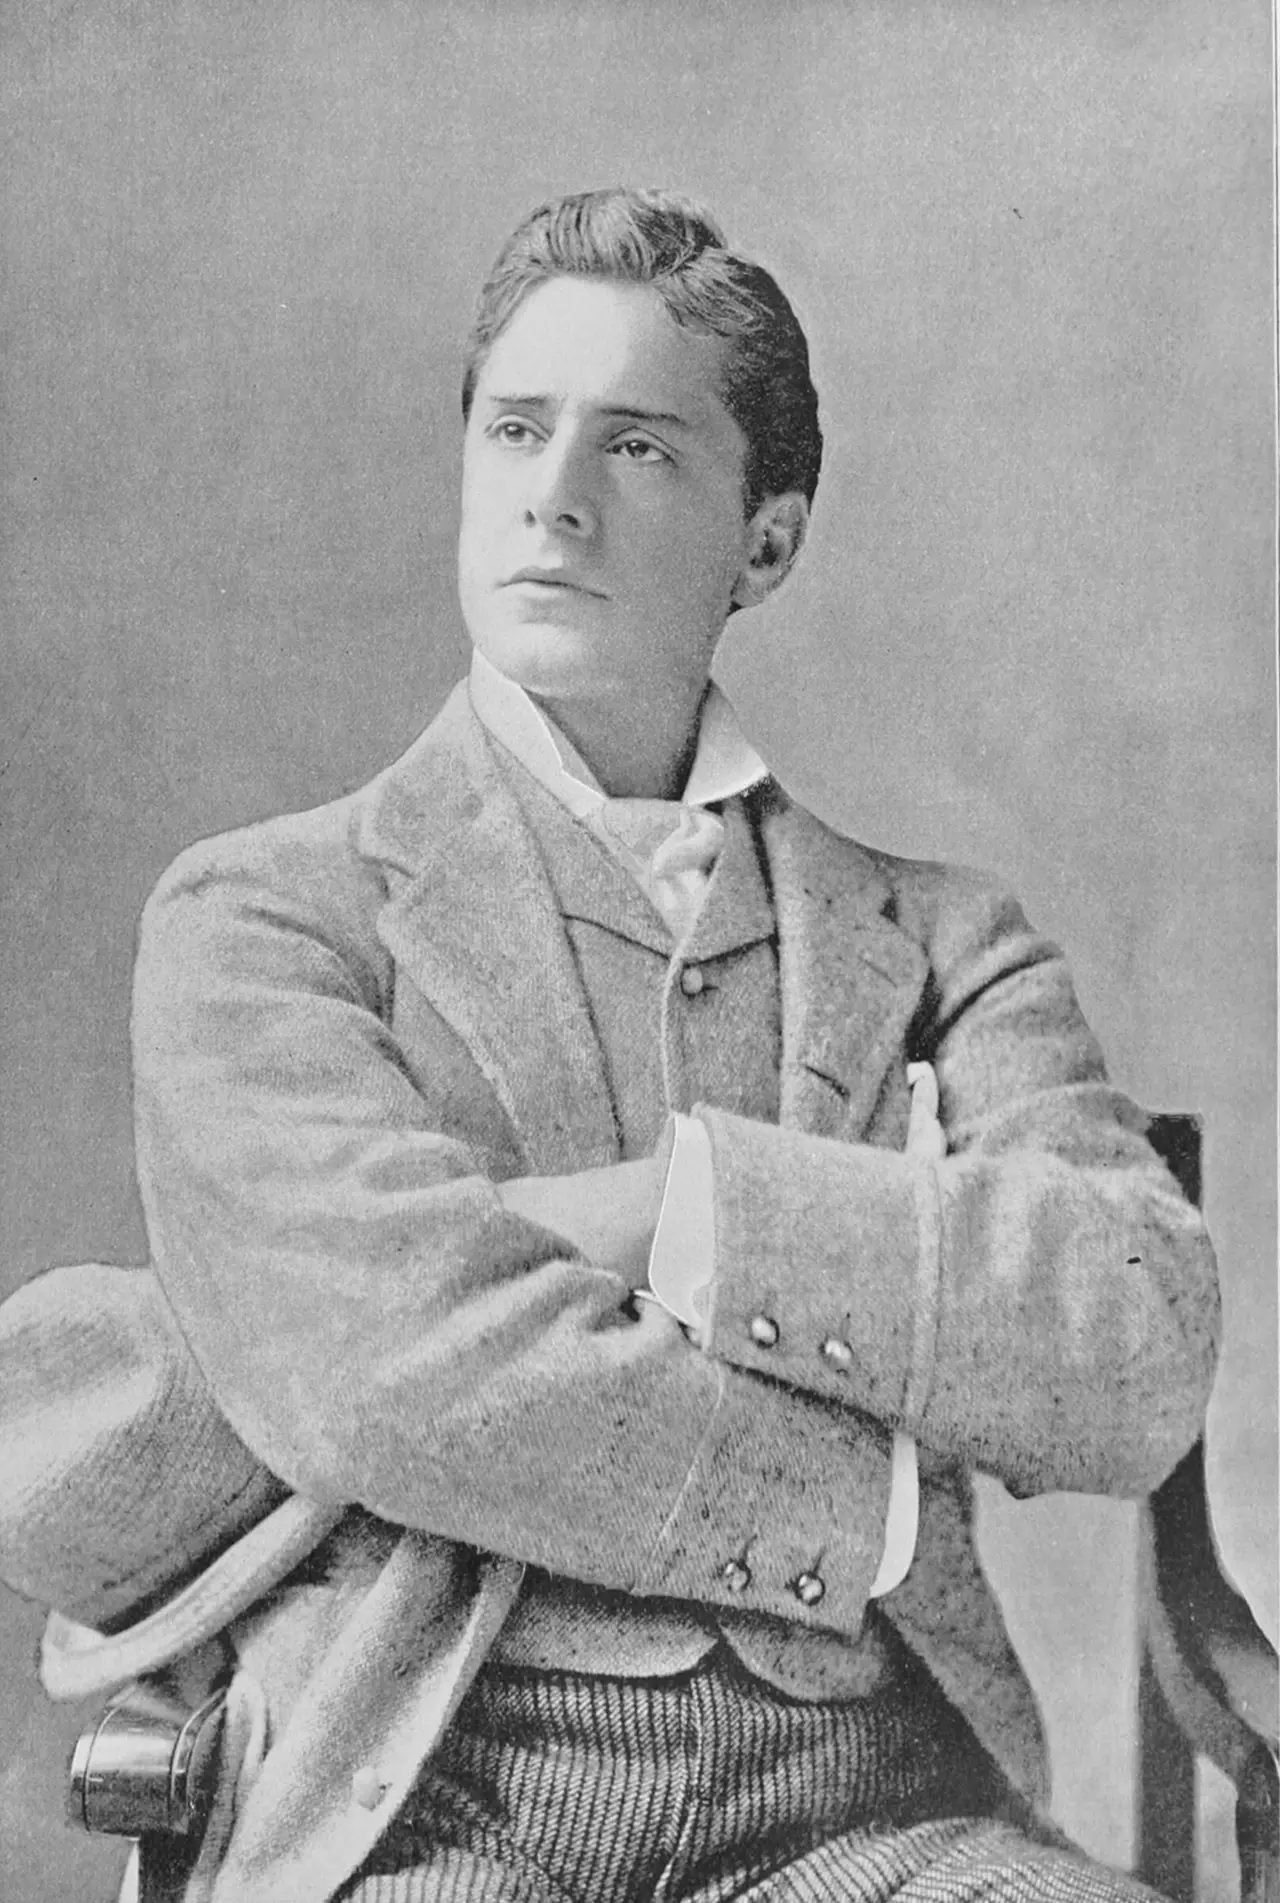 Photographic portrait of William Terriss